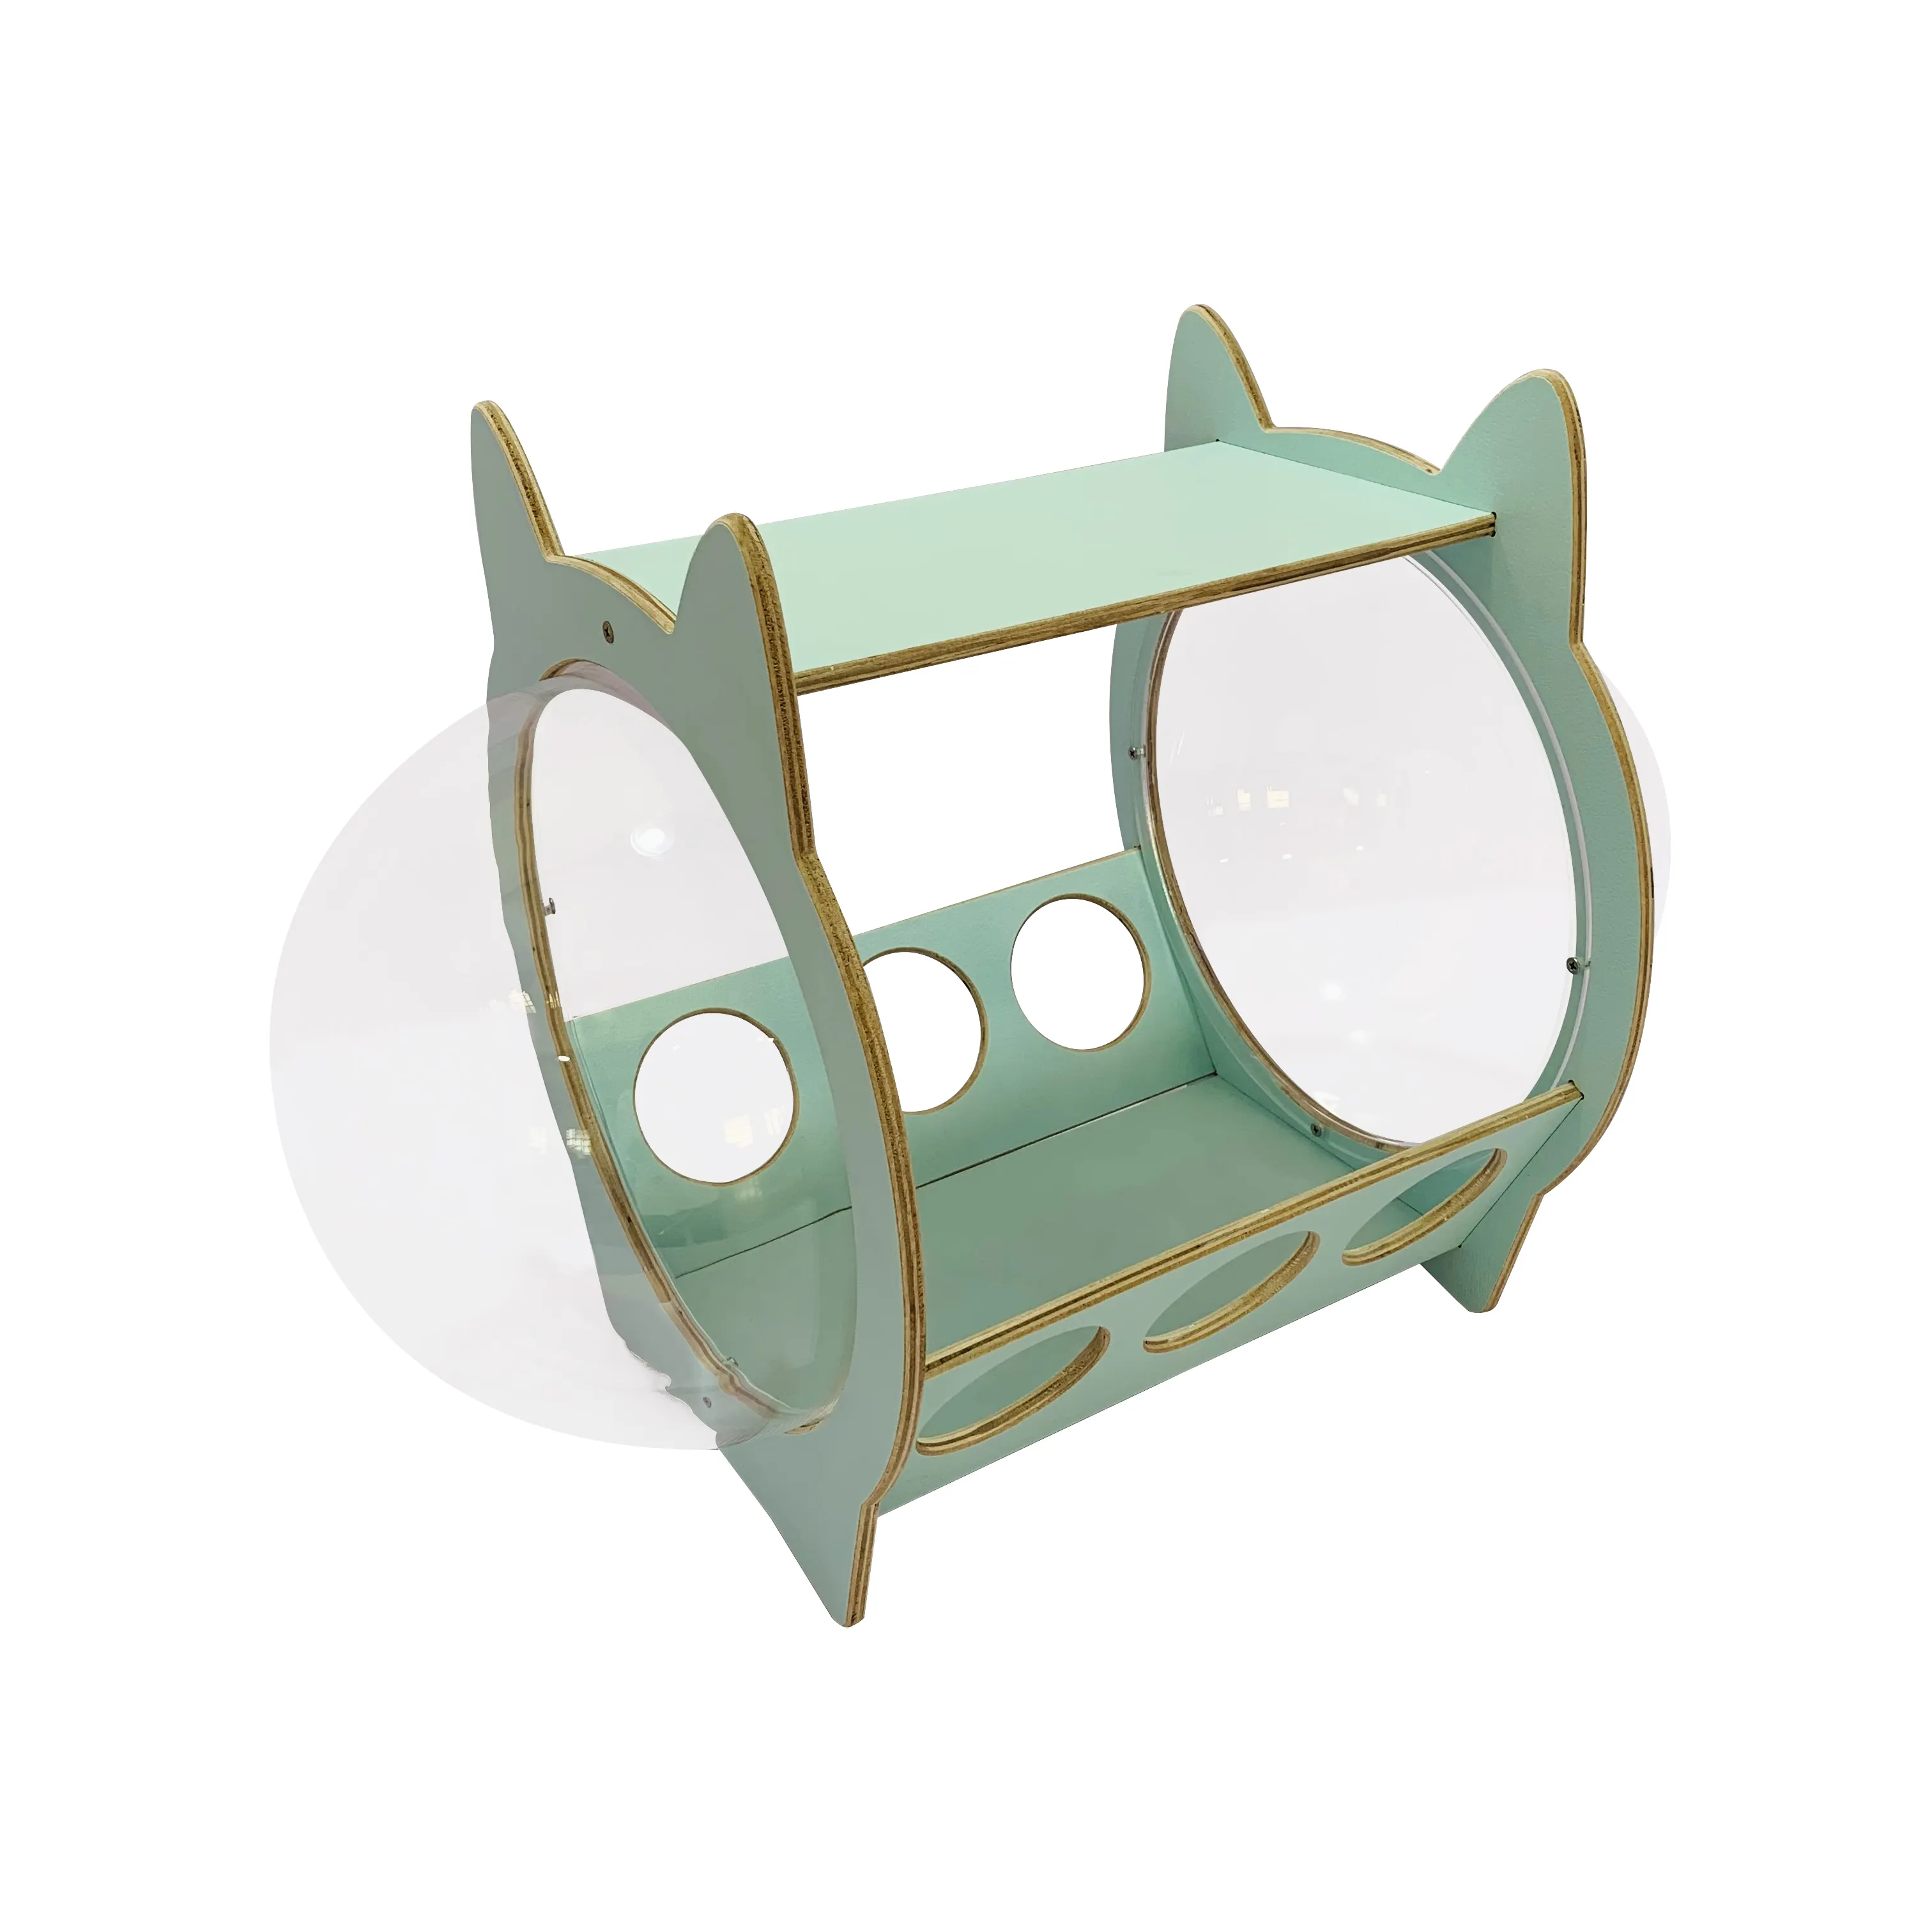 Offres Spéciales moderne acrylique espace Capsule chat litière chiot maison créative mignon forme chat en bois lit pour animaux de compagnie chiens